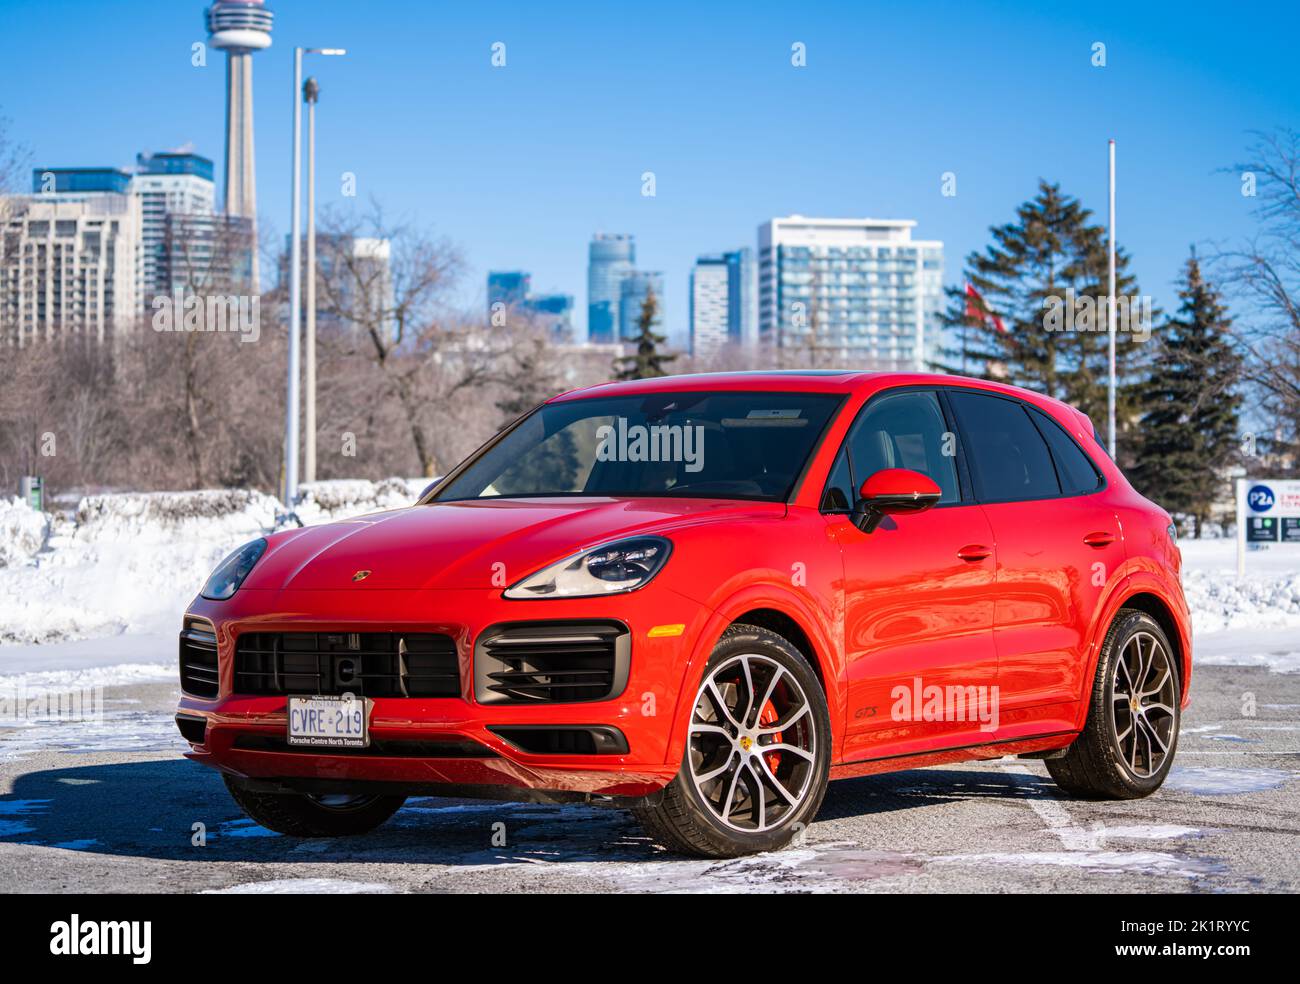 Une Porsche Cayenne Rouge dans un parking bas lors d'une journée ensoleillée en hiver Banque D'Images